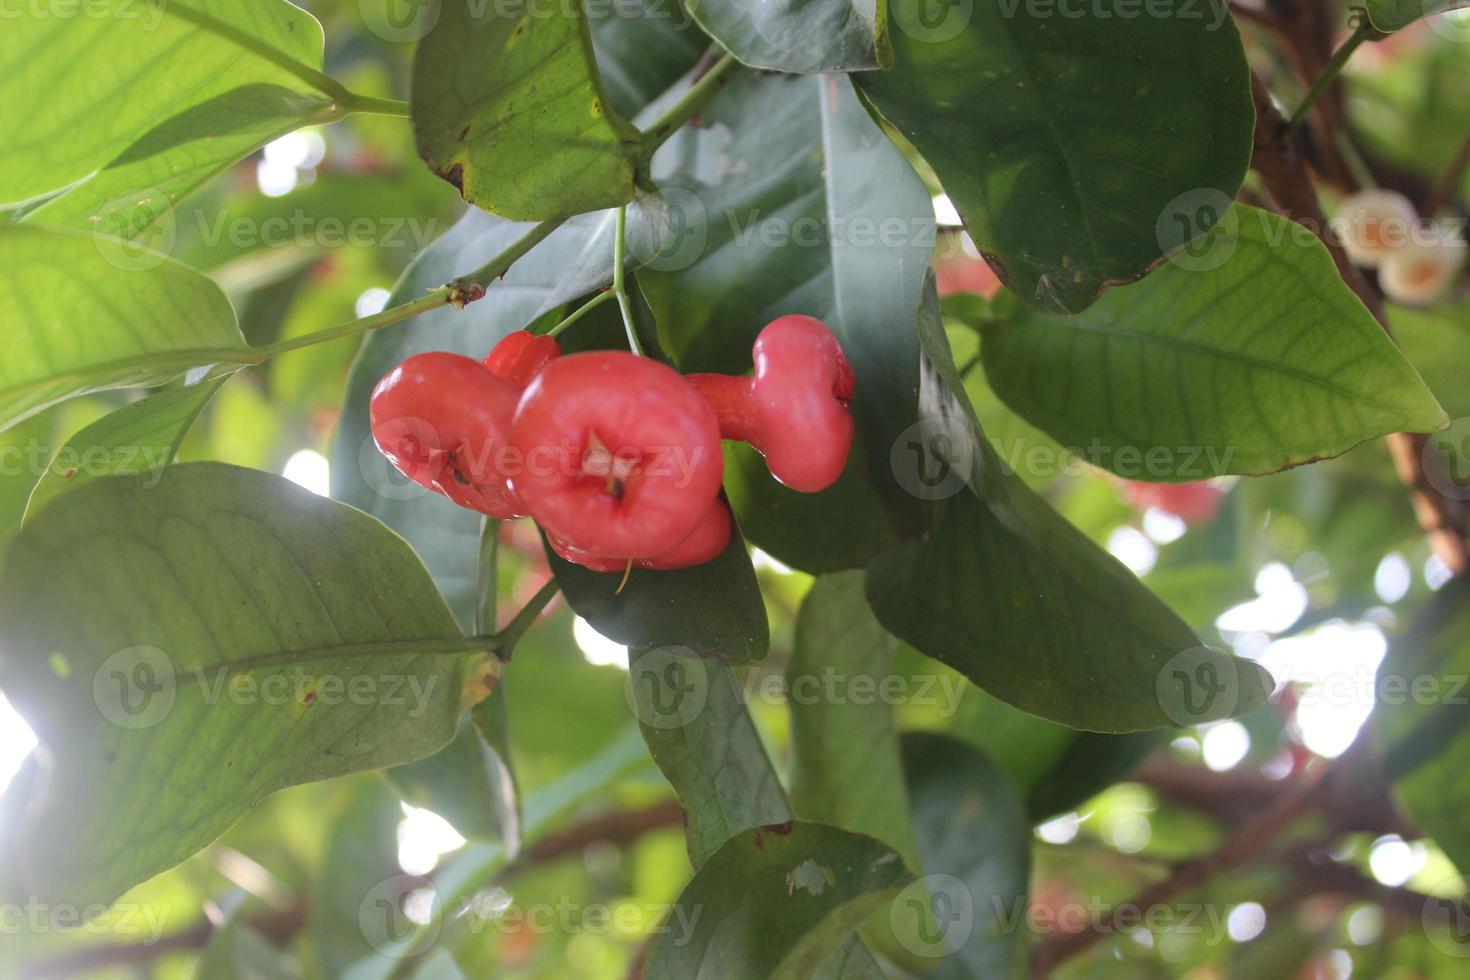 foto desenfocada de guayaba roja colgando de un árbol.